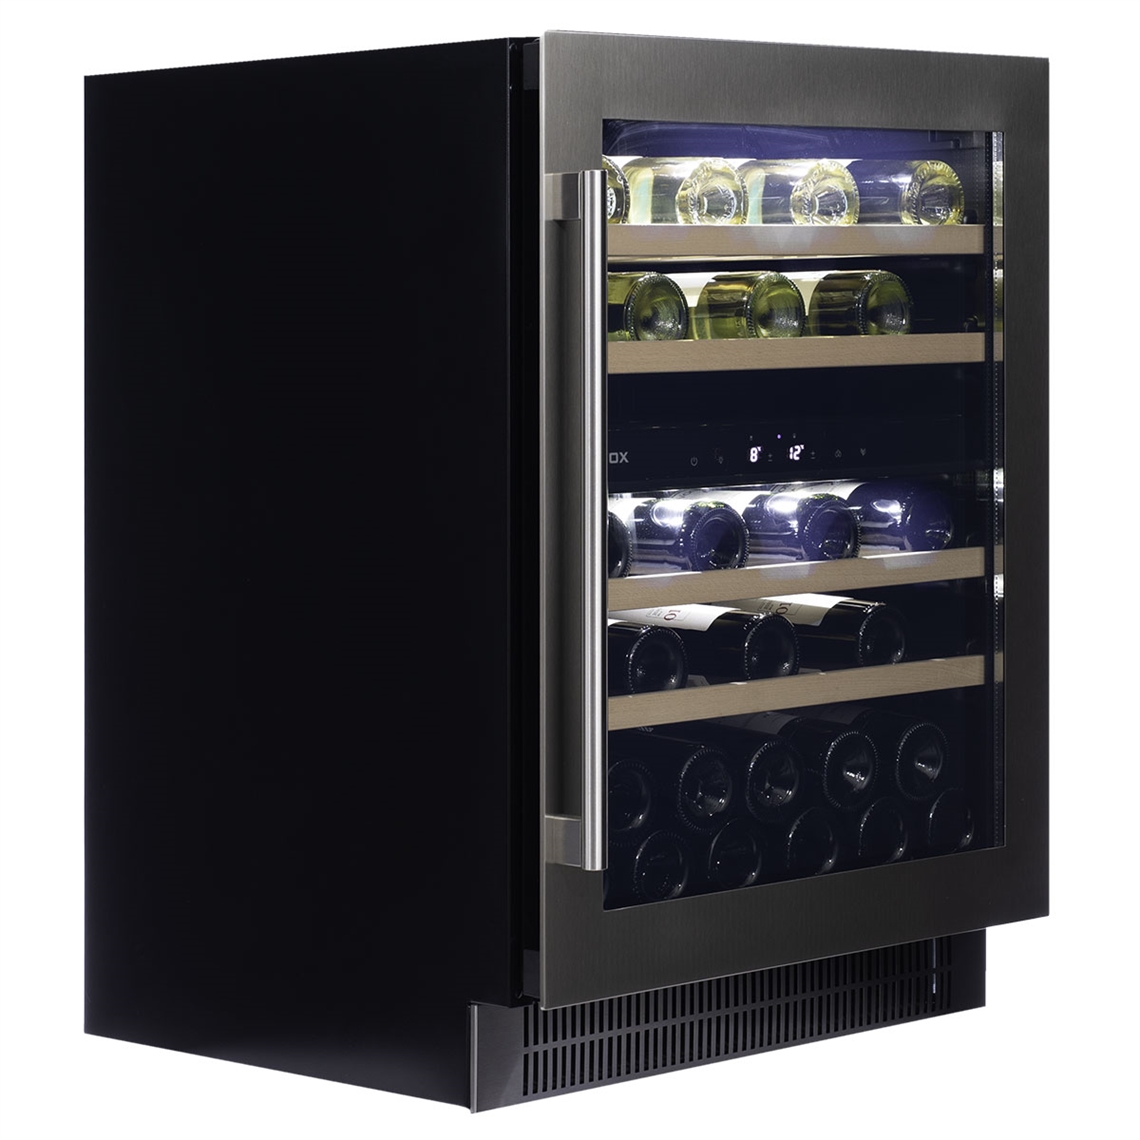 Dunavox Wine Cabinet Flow - 2-Temperature Built-In Under Counter - Stainless Steel DAUF-39.121DSS